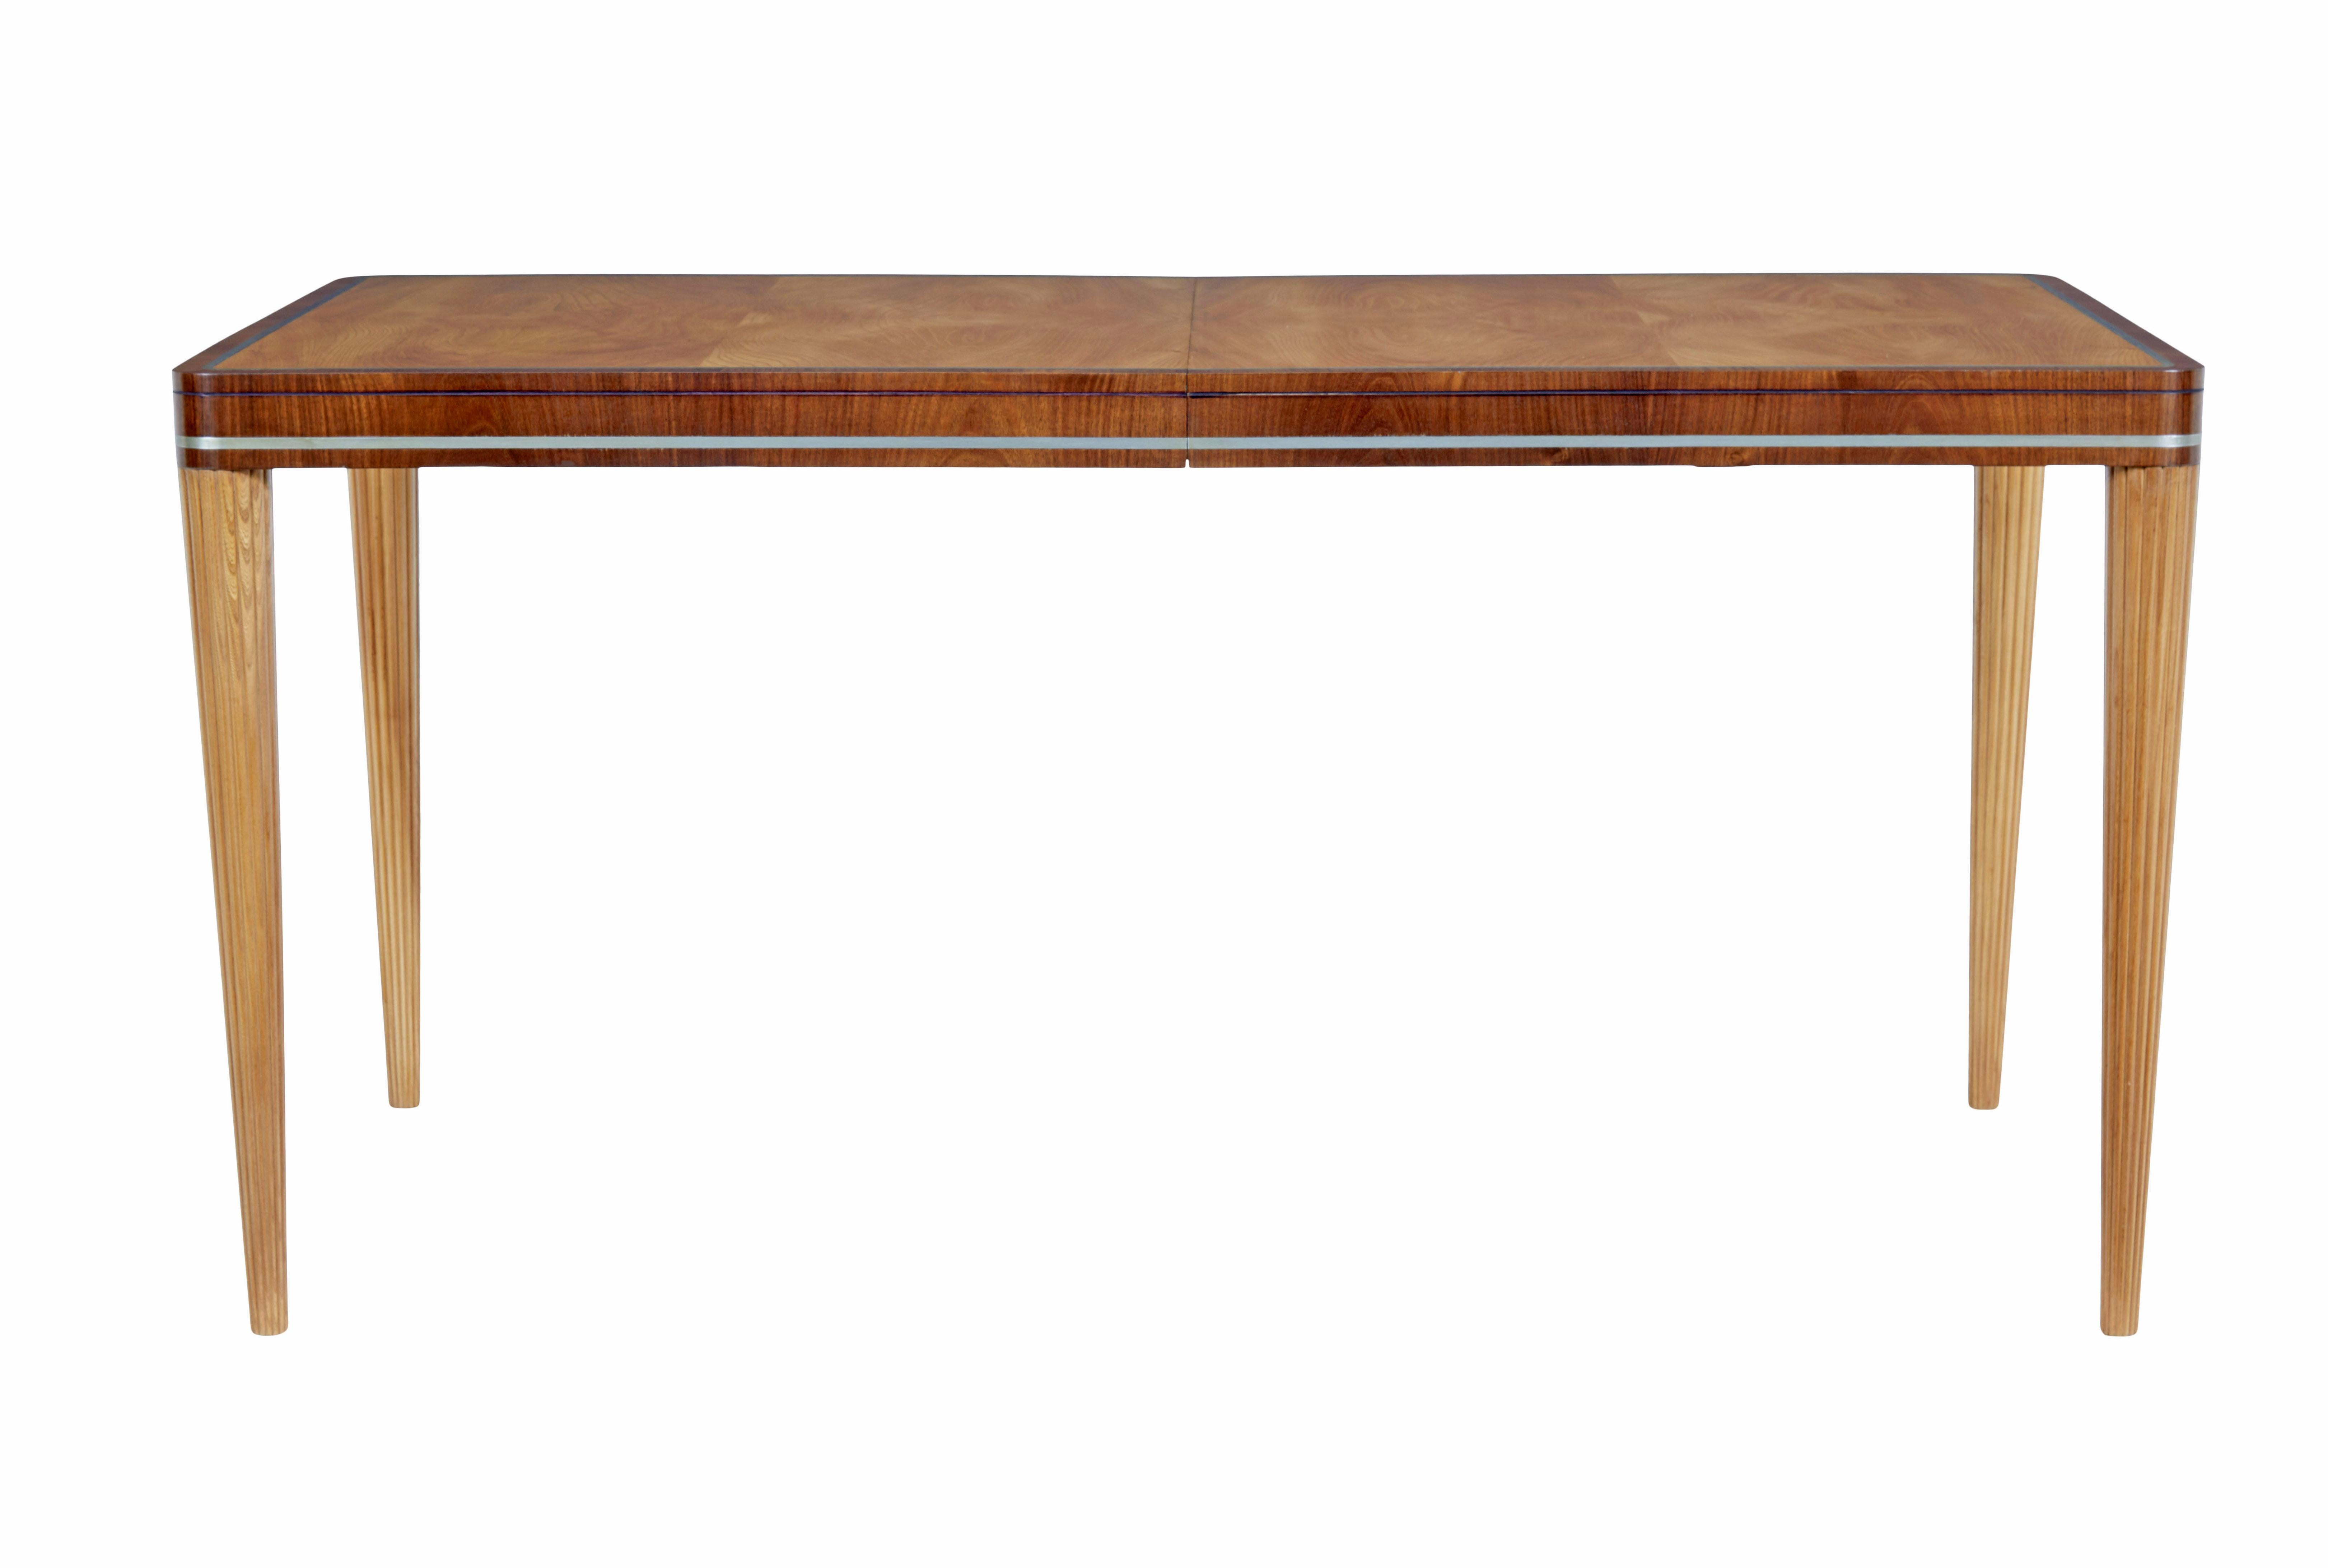 Table en orme et acajou du milieu du 20ème siècle par Carl Bergsten circa 1930.

Magnifique table du célèbre designer suédois Carl Bergsten (1879-1935).

Cette table peut s'étendre, mais elle est actuellement fixée fermée, il n'y a pas de feuille. 